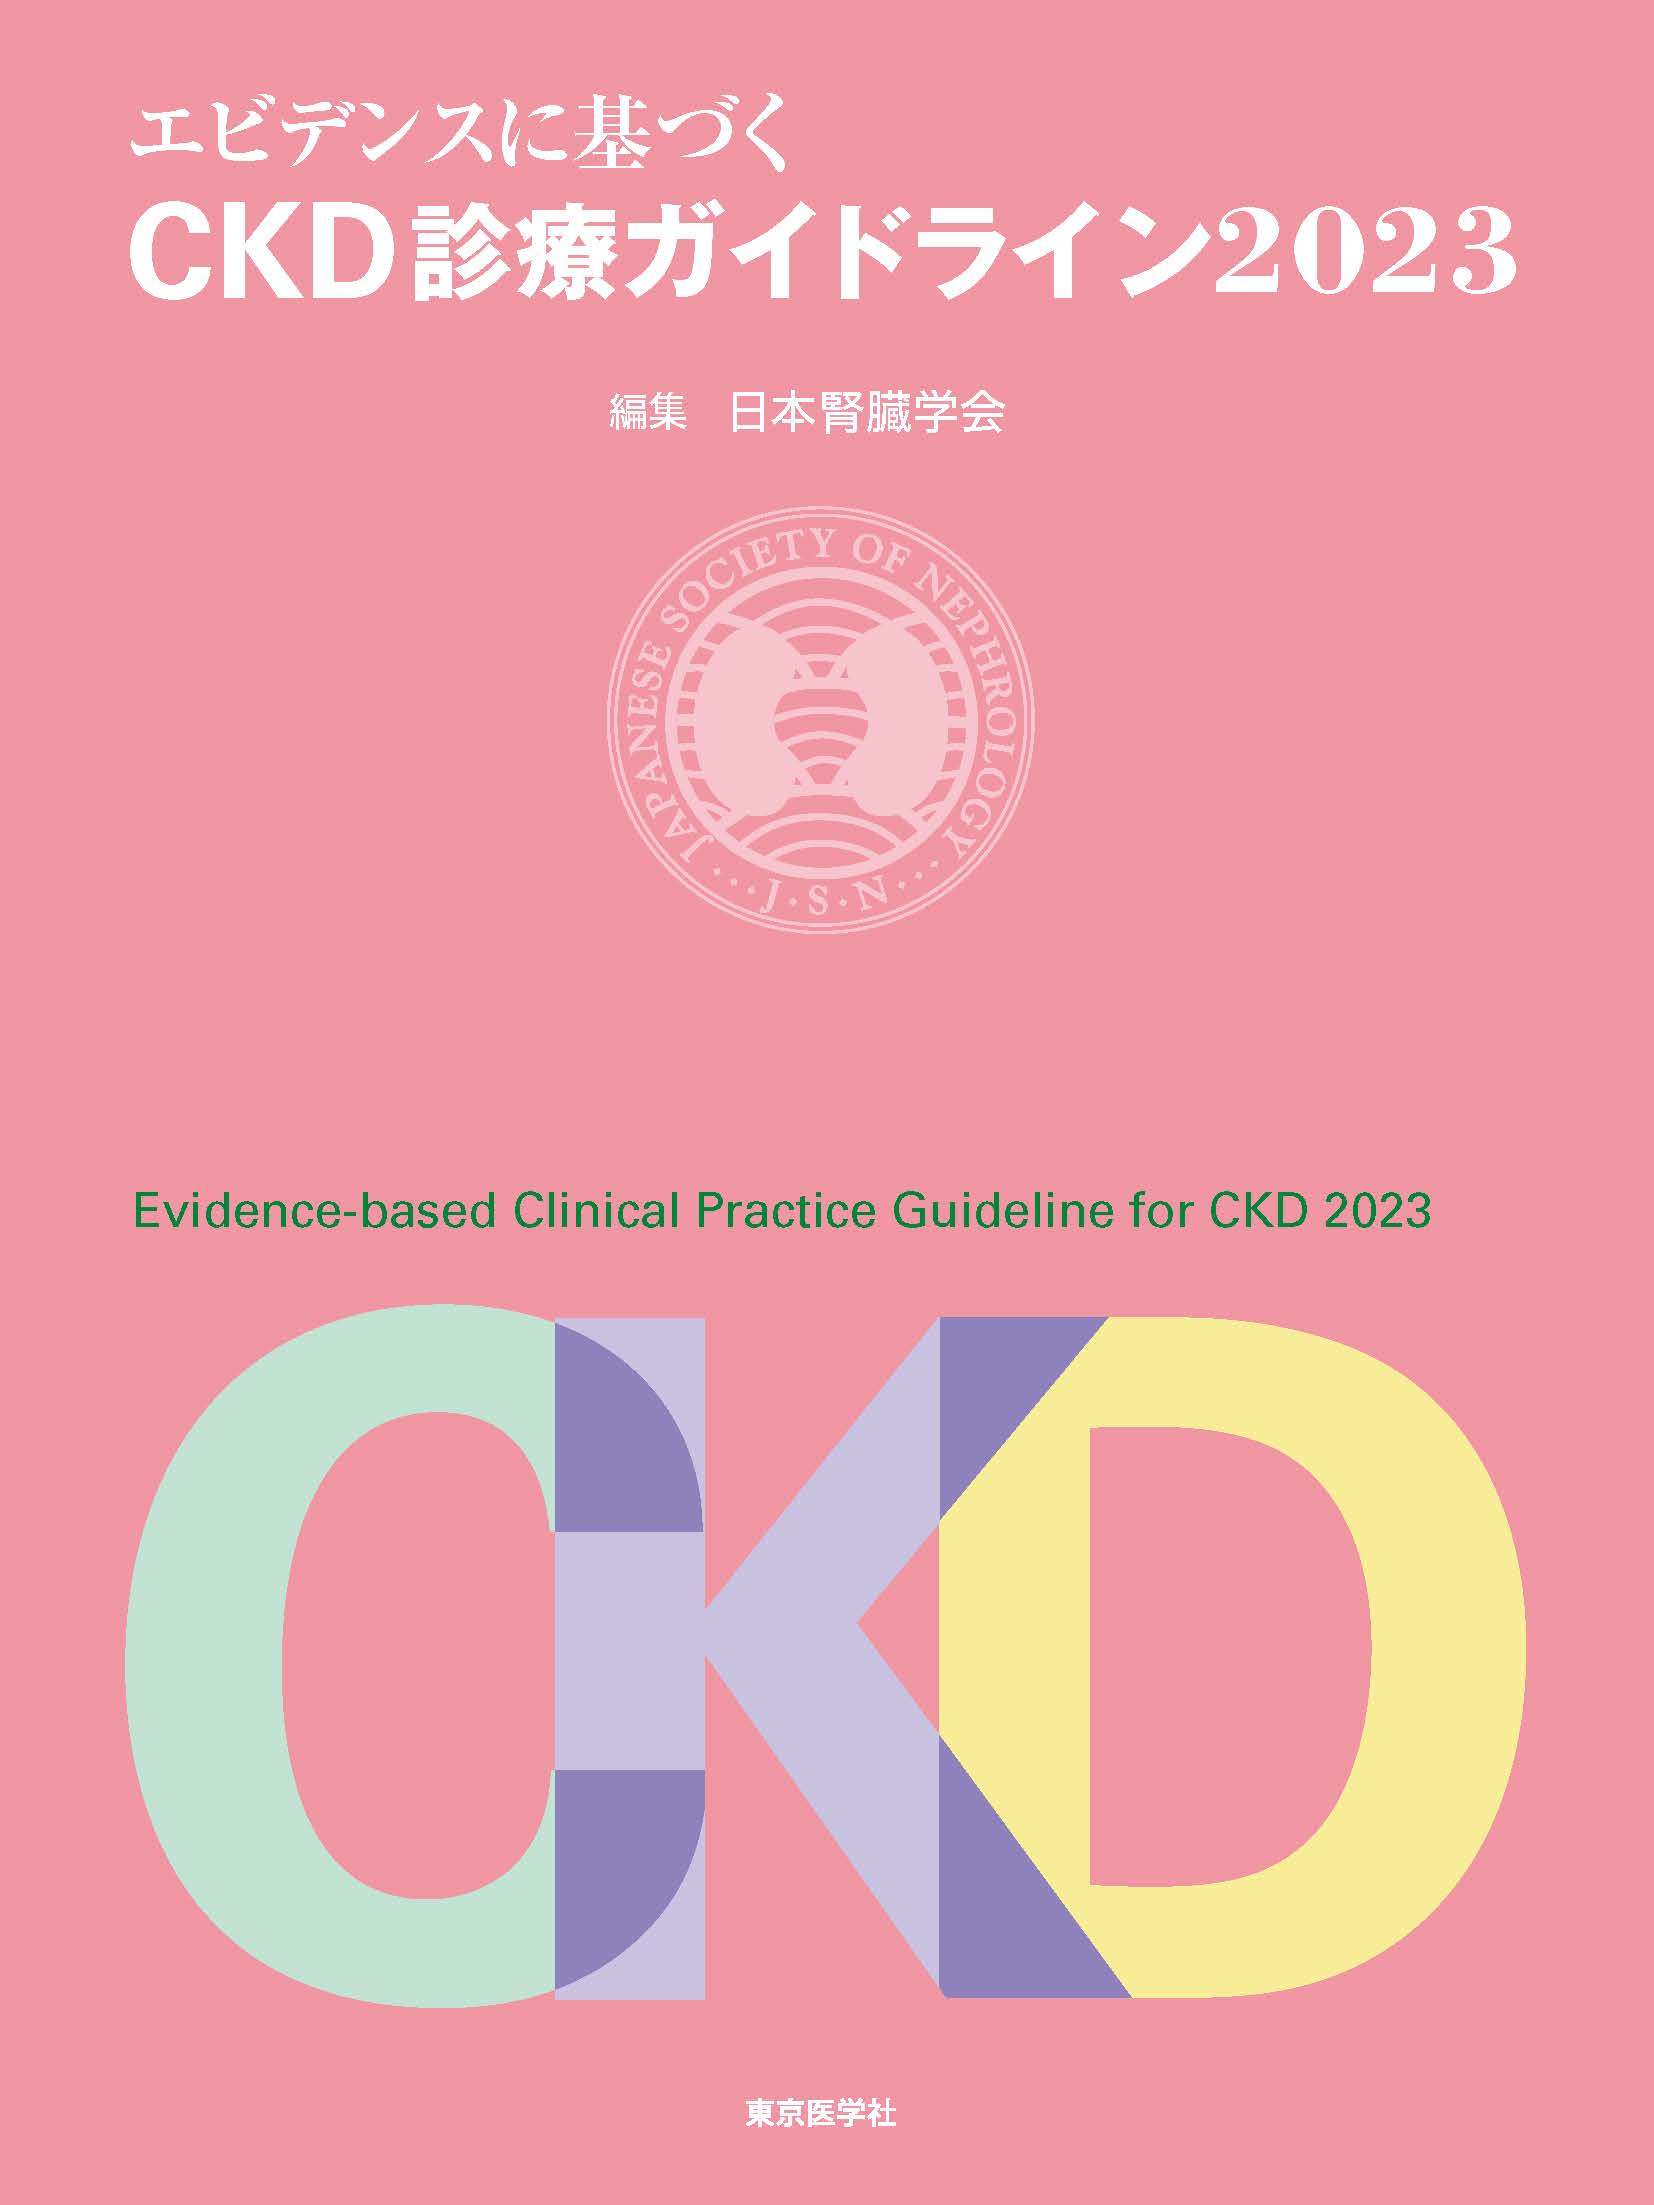 エビデンスに基づくCKD診療ガイドライン2023」刊行のお知らせ-医療従事 